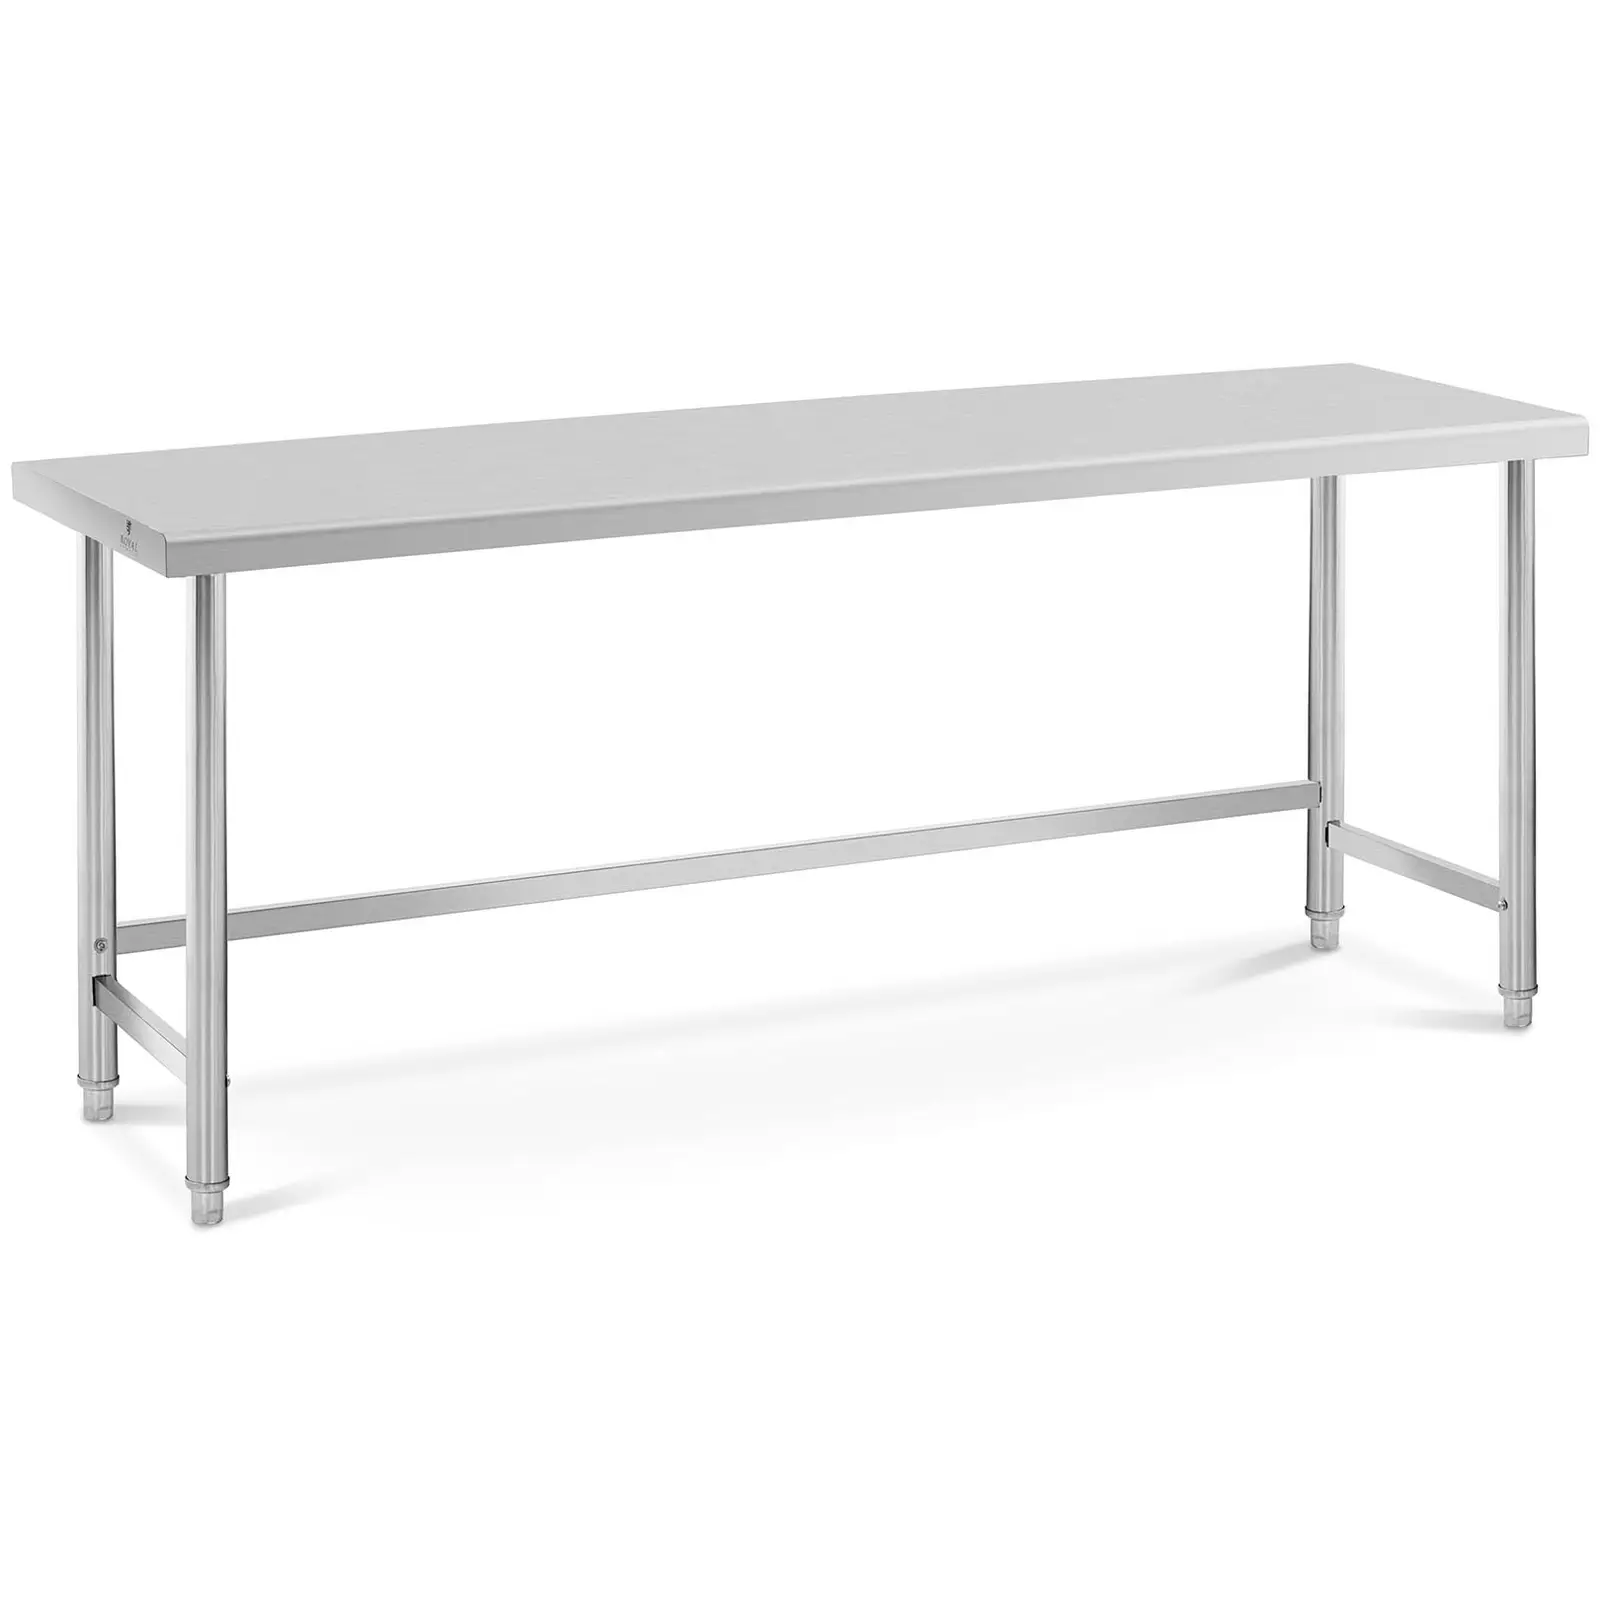 Pracovný stôl z nehrdzavejúcej ocele - 200 x 60 cm - nosnosť 95 kg